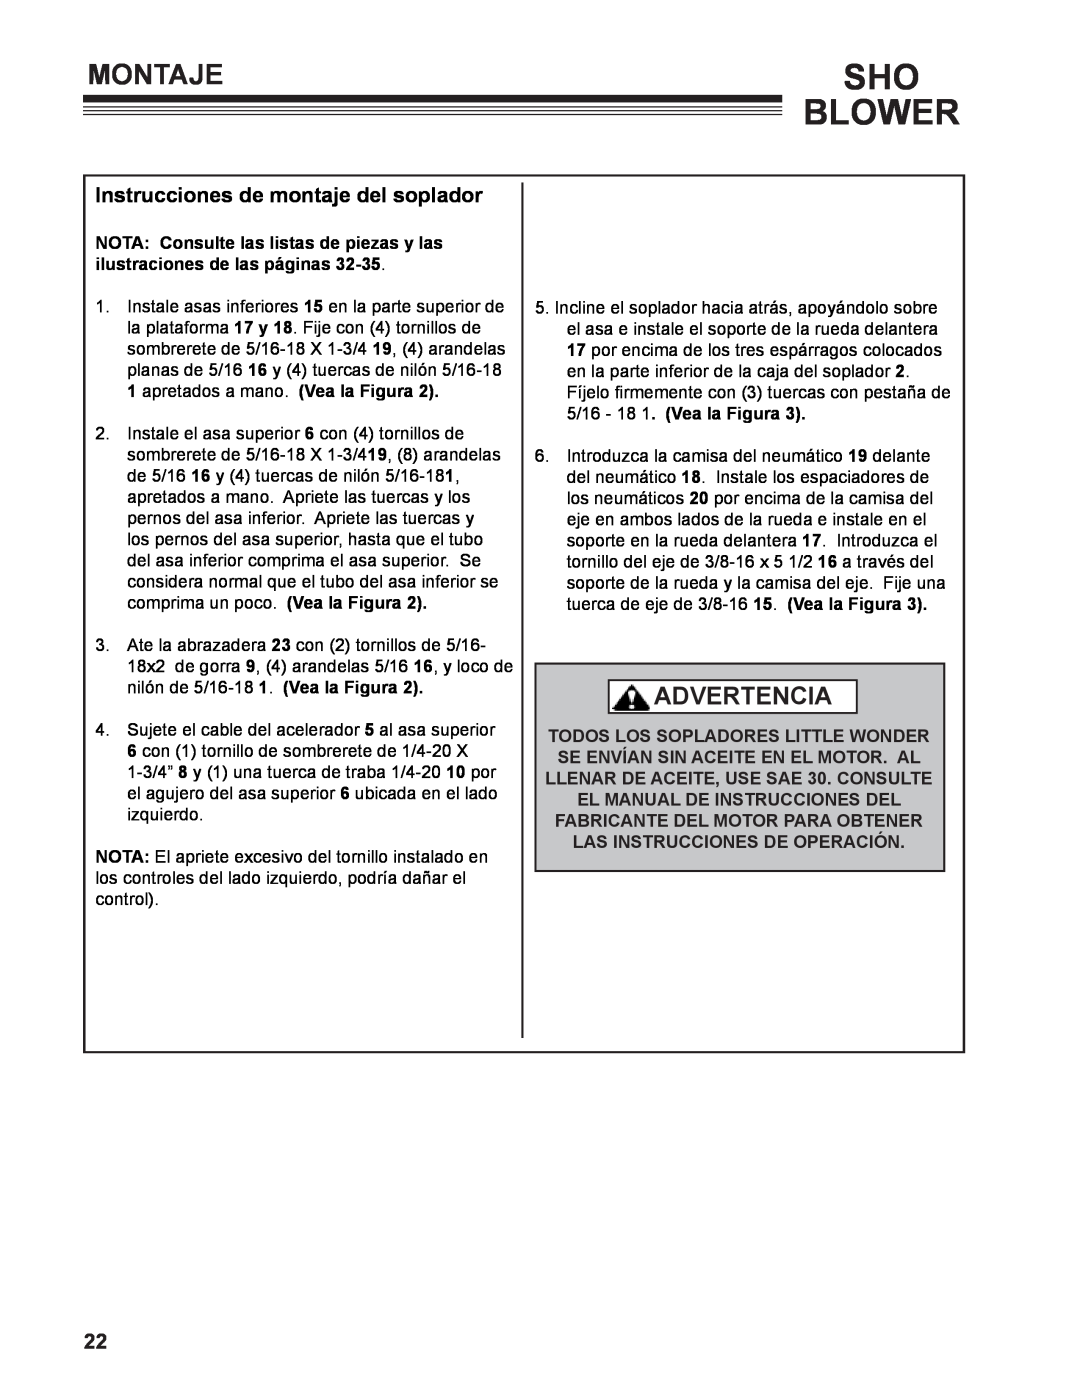 Little Wonder 9502-00-01 technical manual Montaje, Instrucciones de montaje del soplador, Sho Blower, Advertencia 